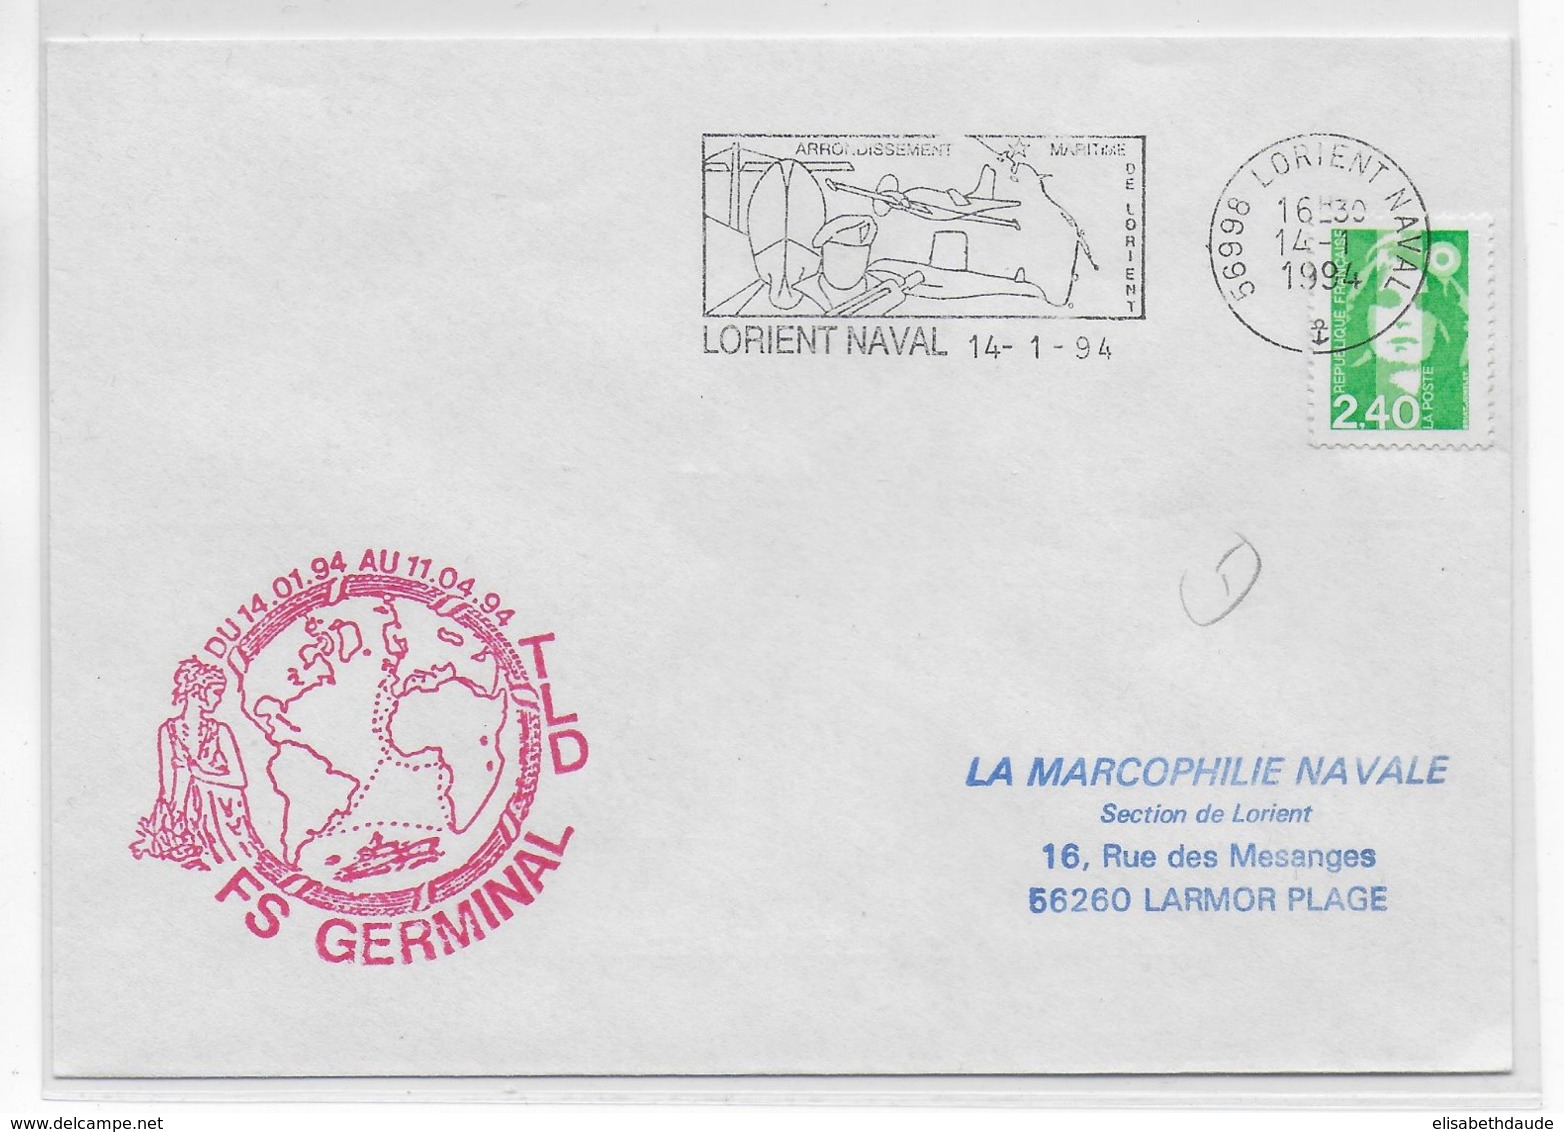 1994 - NAVAL - ENVELOPPE MISSION TLD Du NAVIRE De GUERRE "FREGATE GERMINAL" - LORIENT NAVAL - Poste Navale